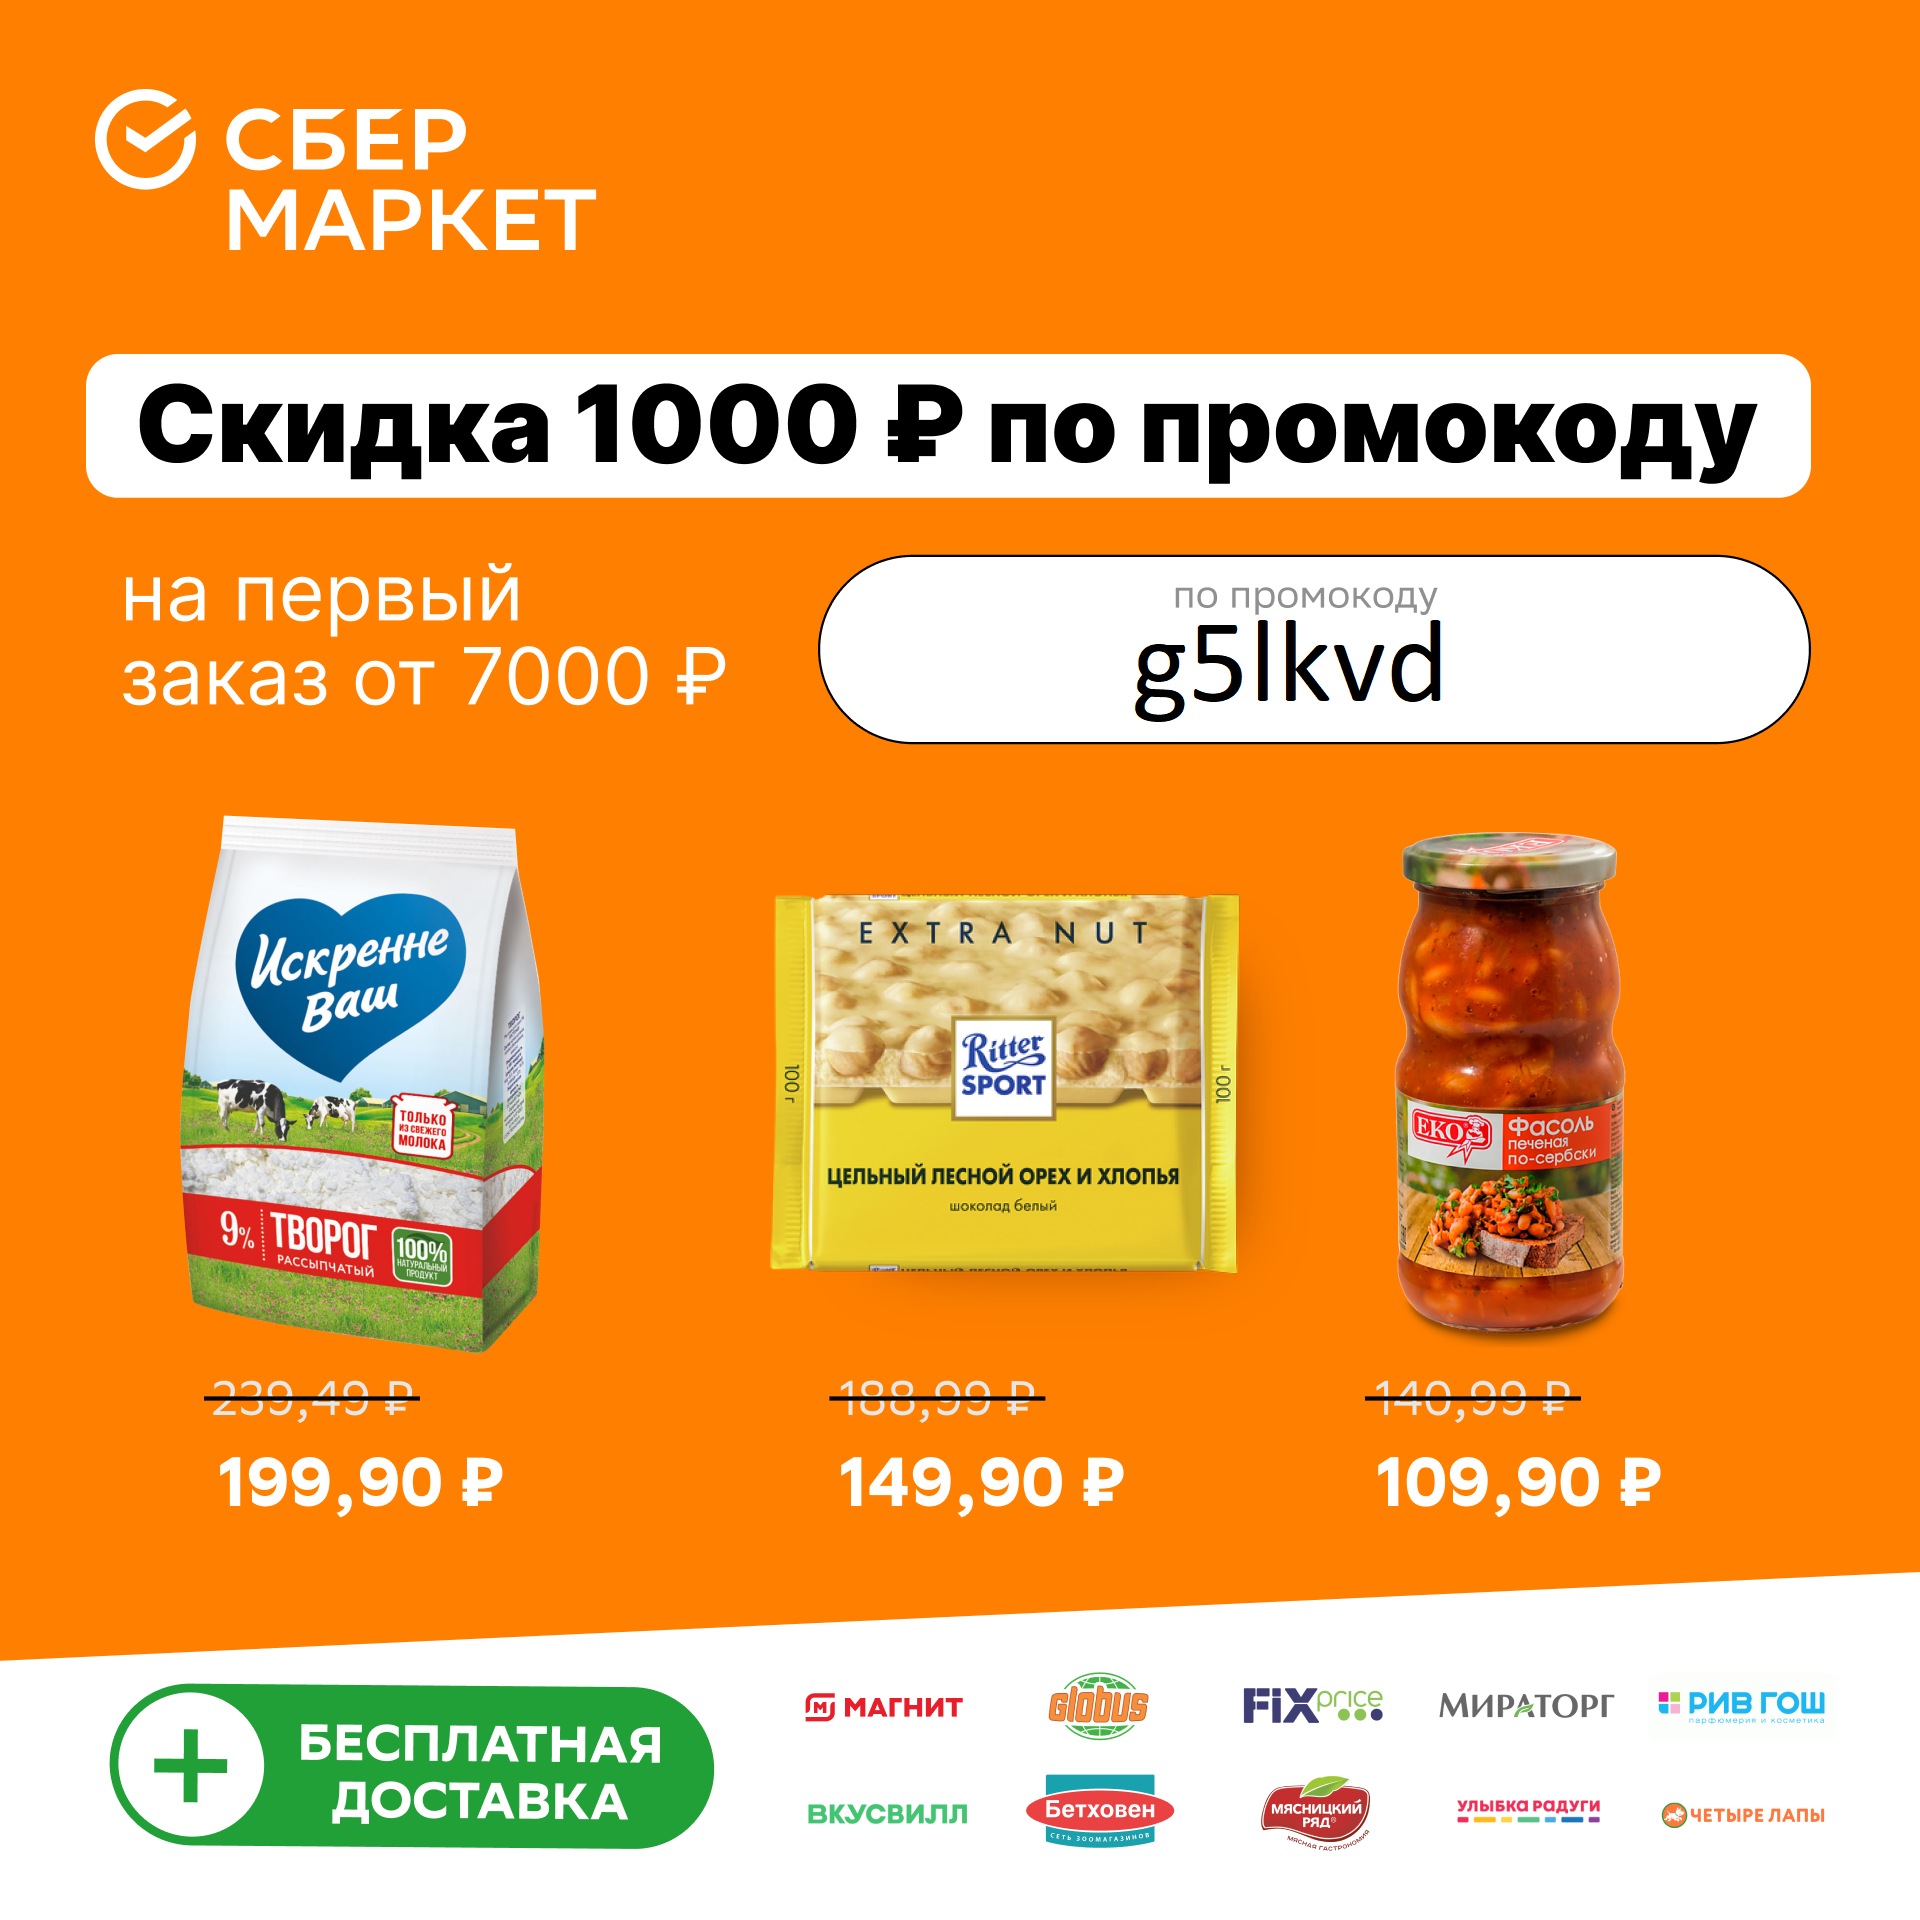 Сбермаркет на первый заказ скидка 1000 рублей